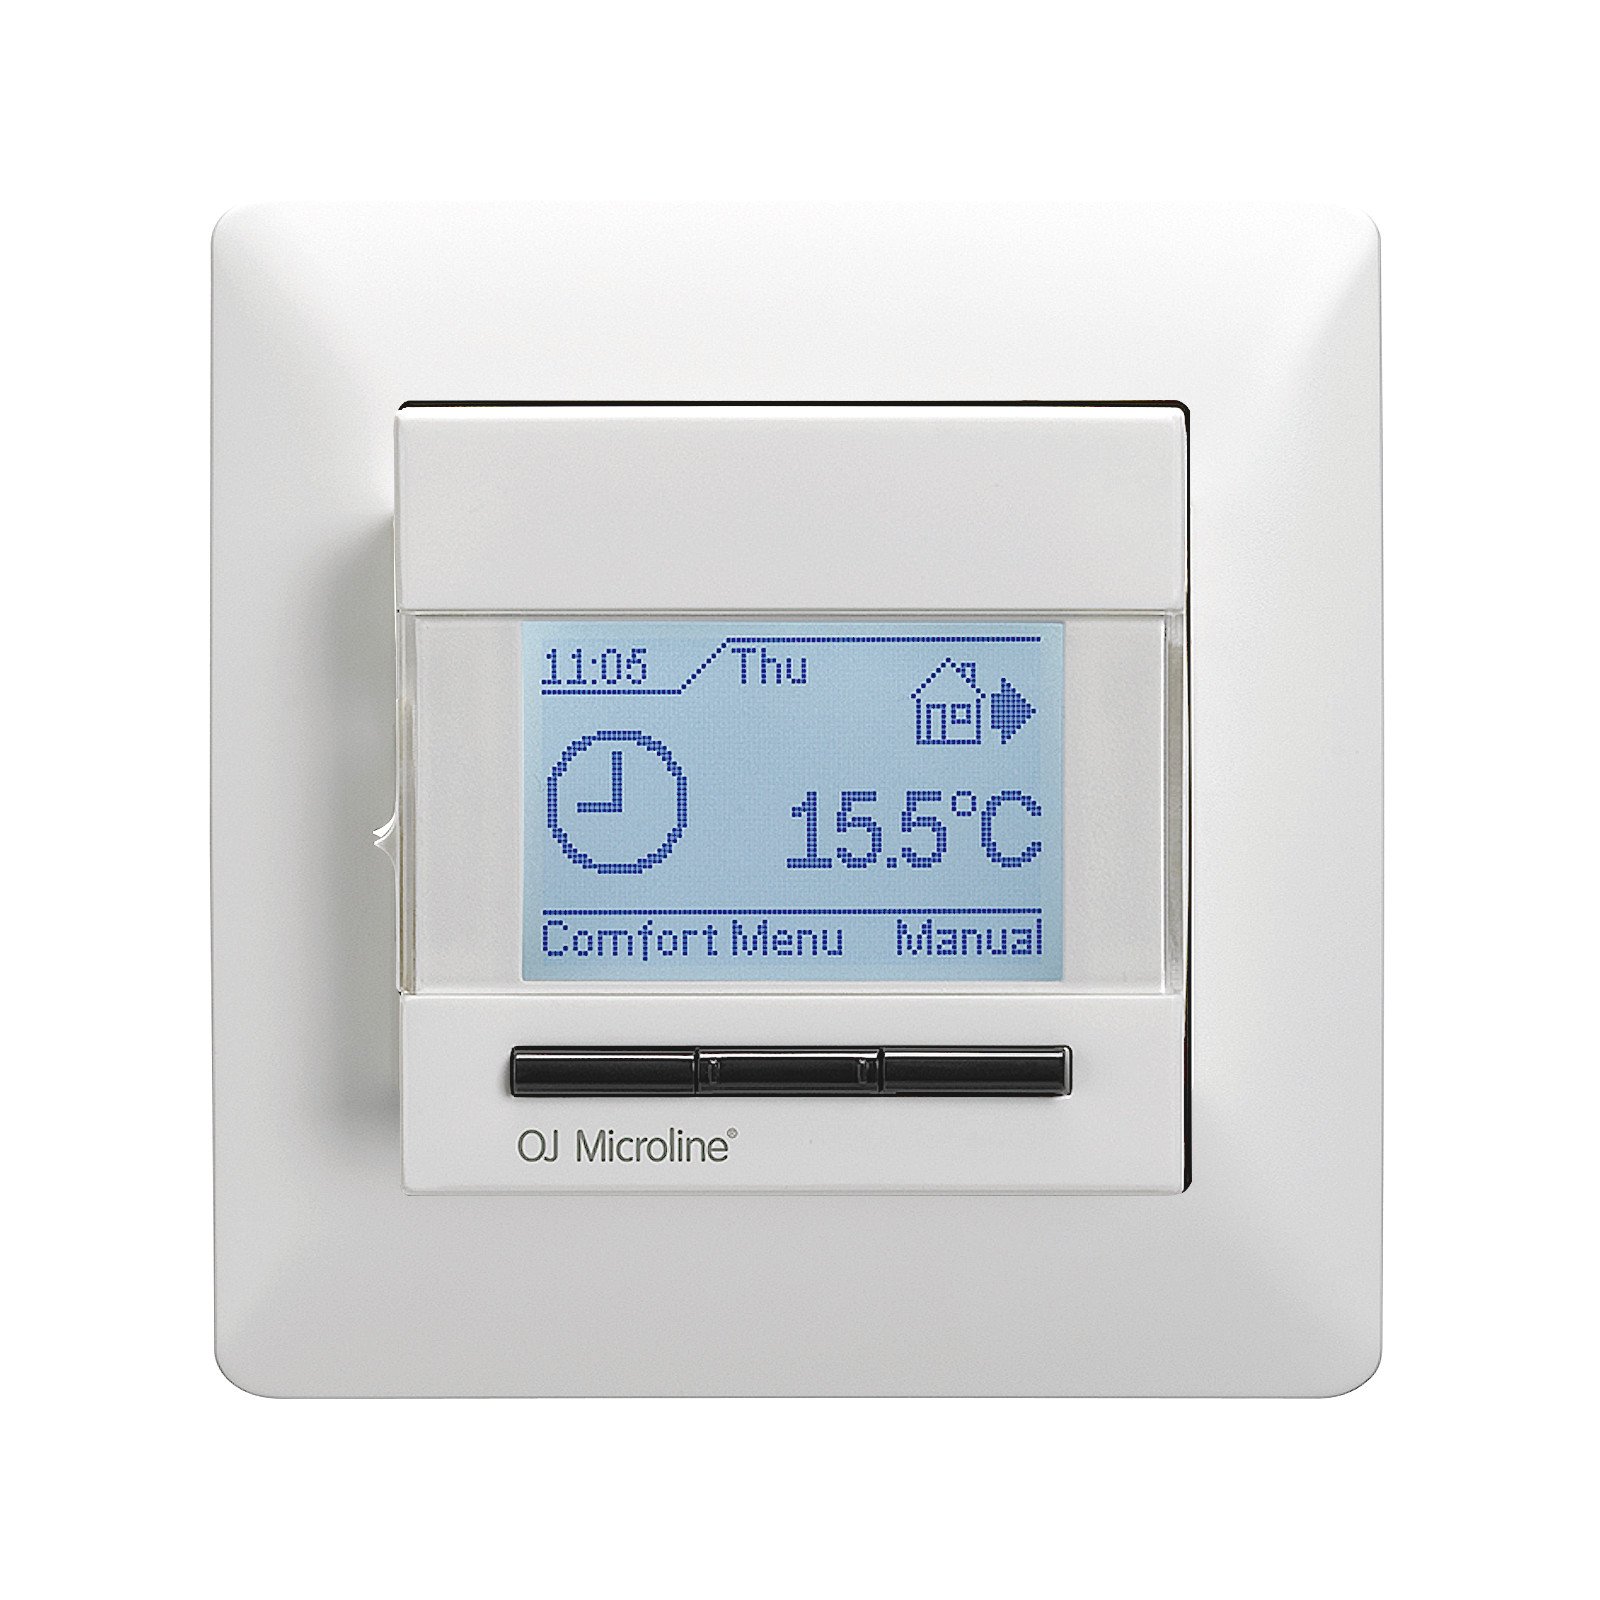 Thermostat mit ext. Sensor für elektrische Flächenheizung